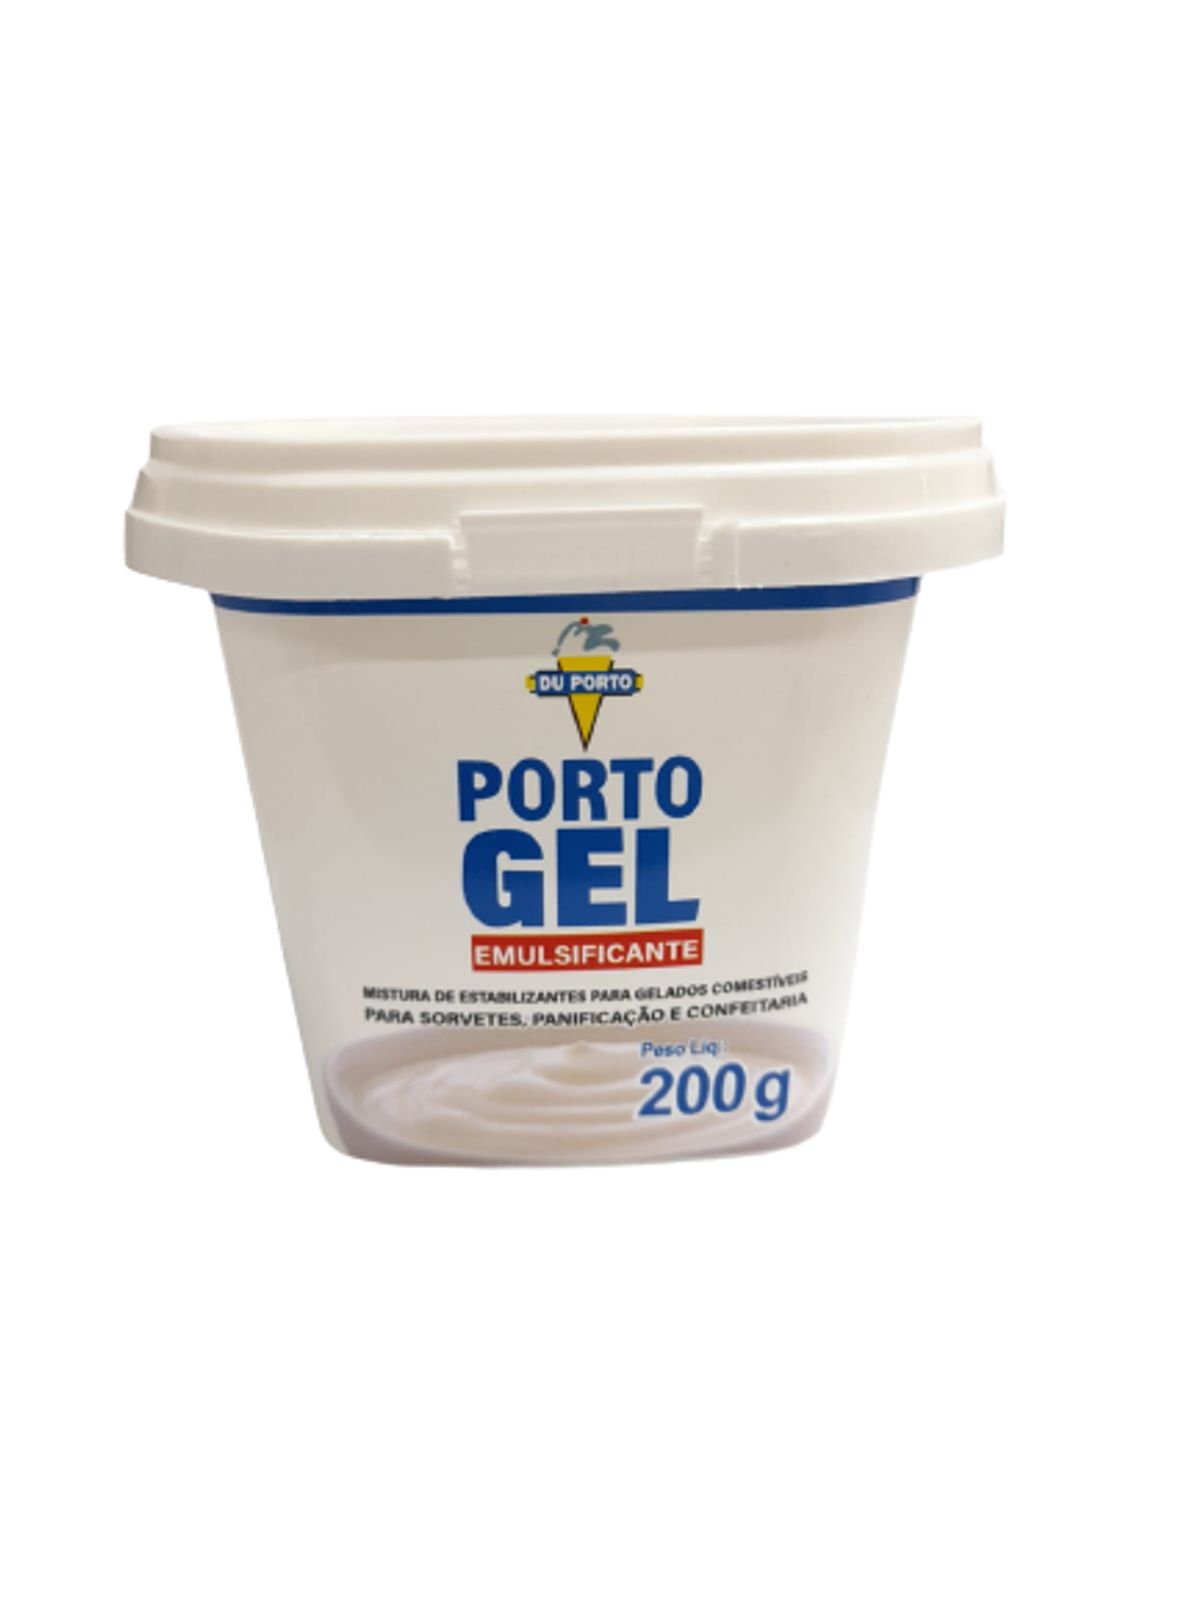 Emulsificante Porto Gel 200g